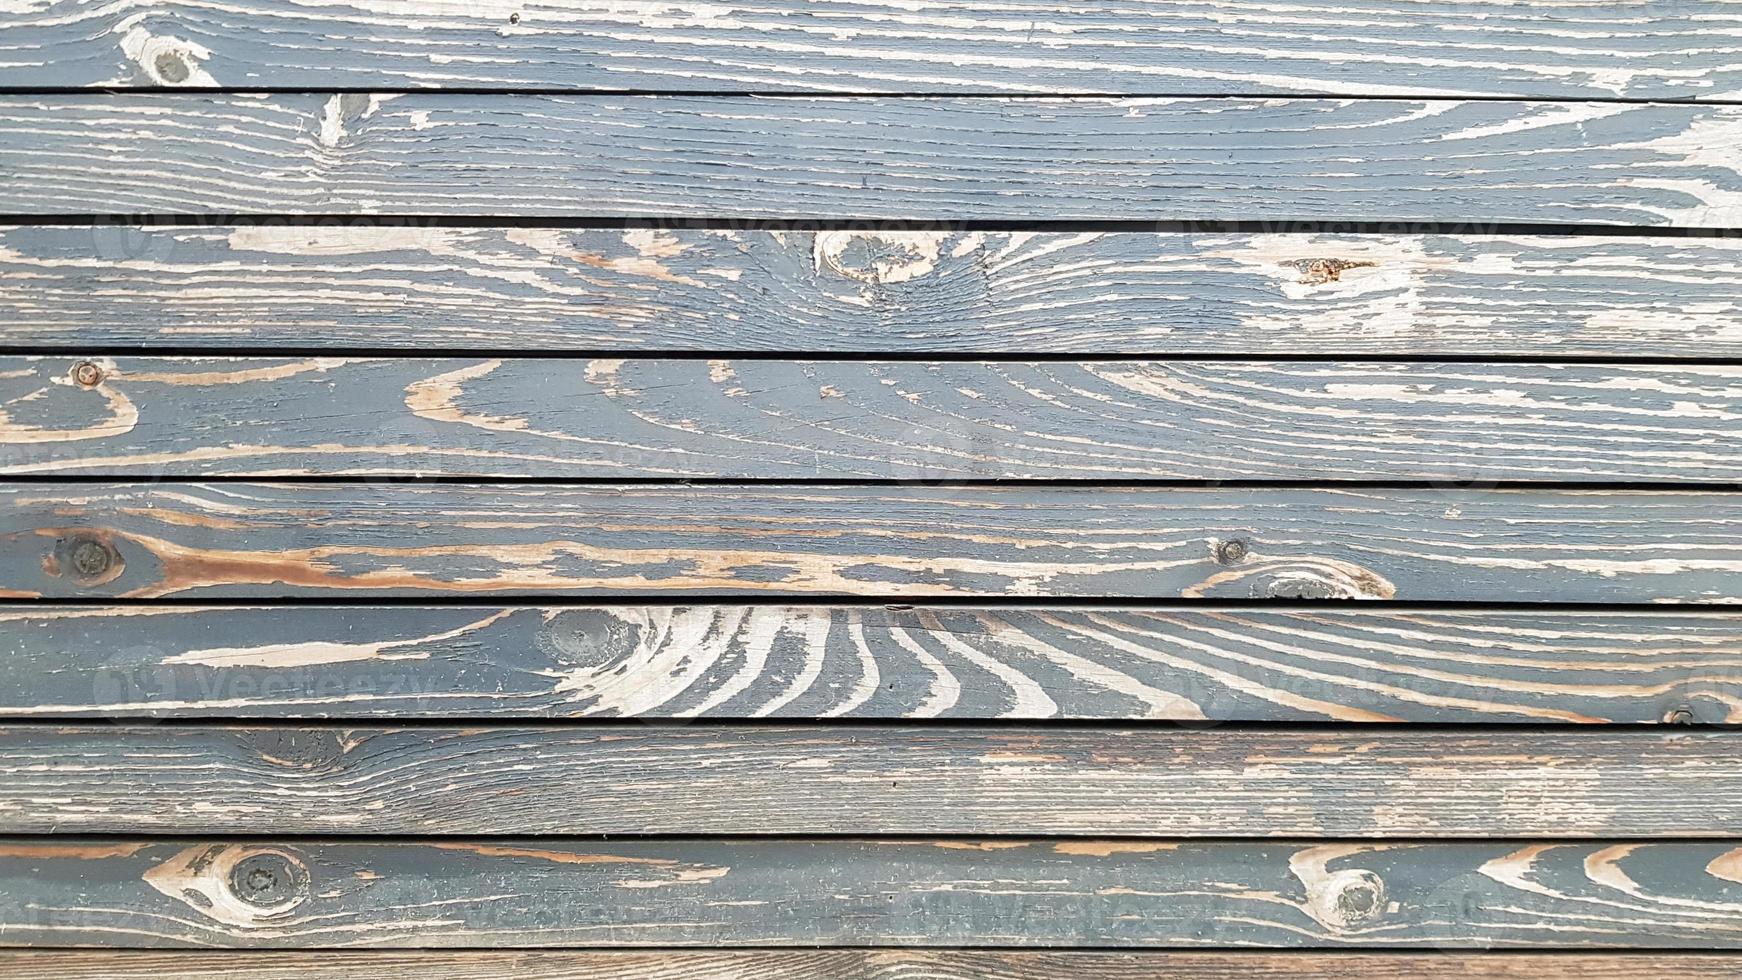 horizontale houtstructuur. houten planken. horizontale schuur houten muur bekisting textuur. gerestaureerde oude houten plank. huis interieur design element in een moderne vintage stijl. hardhout is donkerbruin. detailopname foto